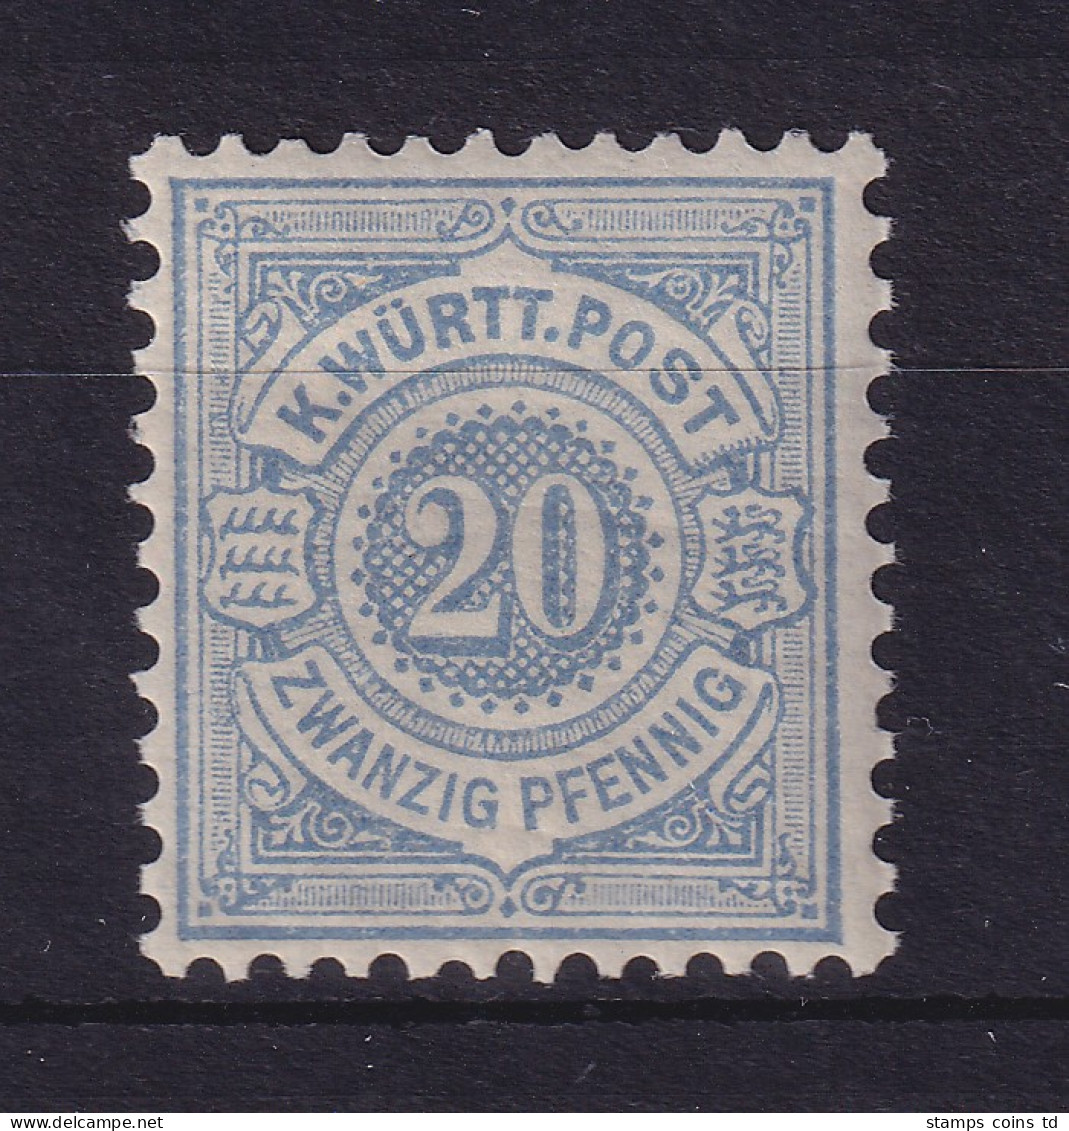 Württemberg 1875 Ziffer 20 Pfennig Mi.-Nr. 47a Postfrisch ** - Mint